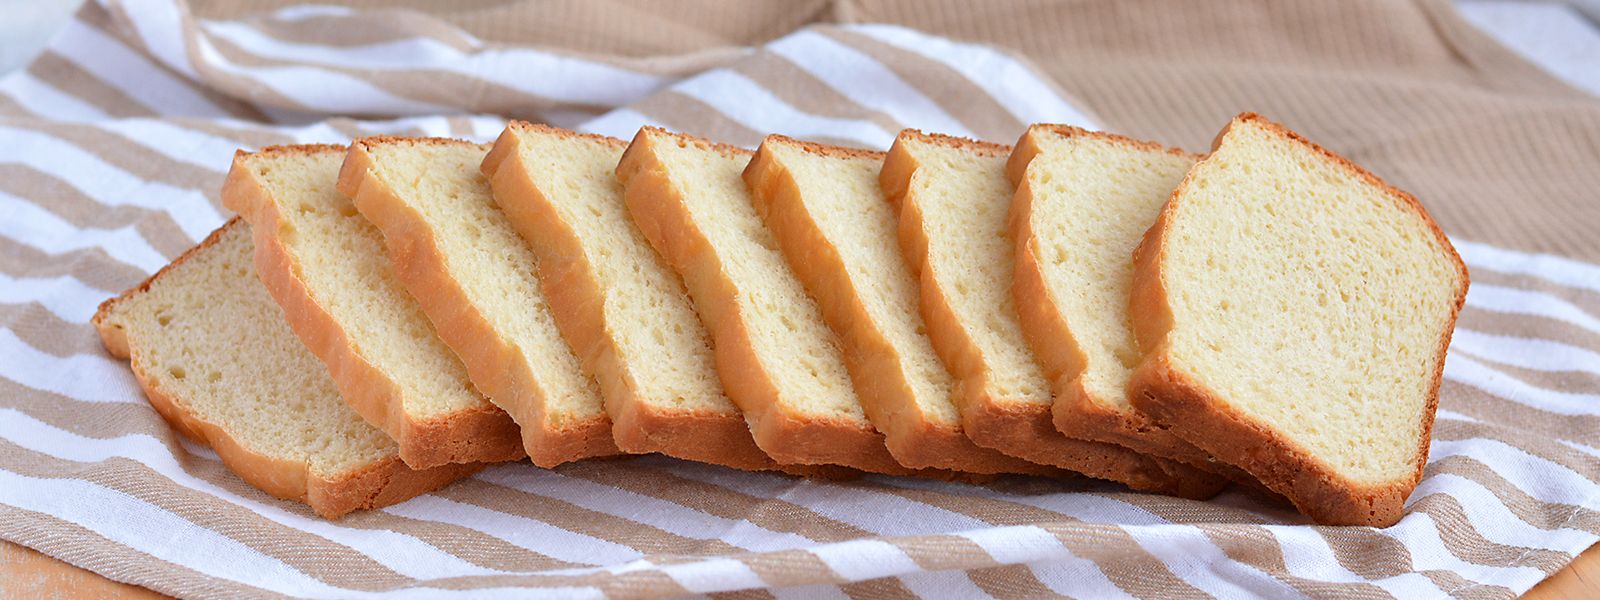 Nadýchaný toastový chléb